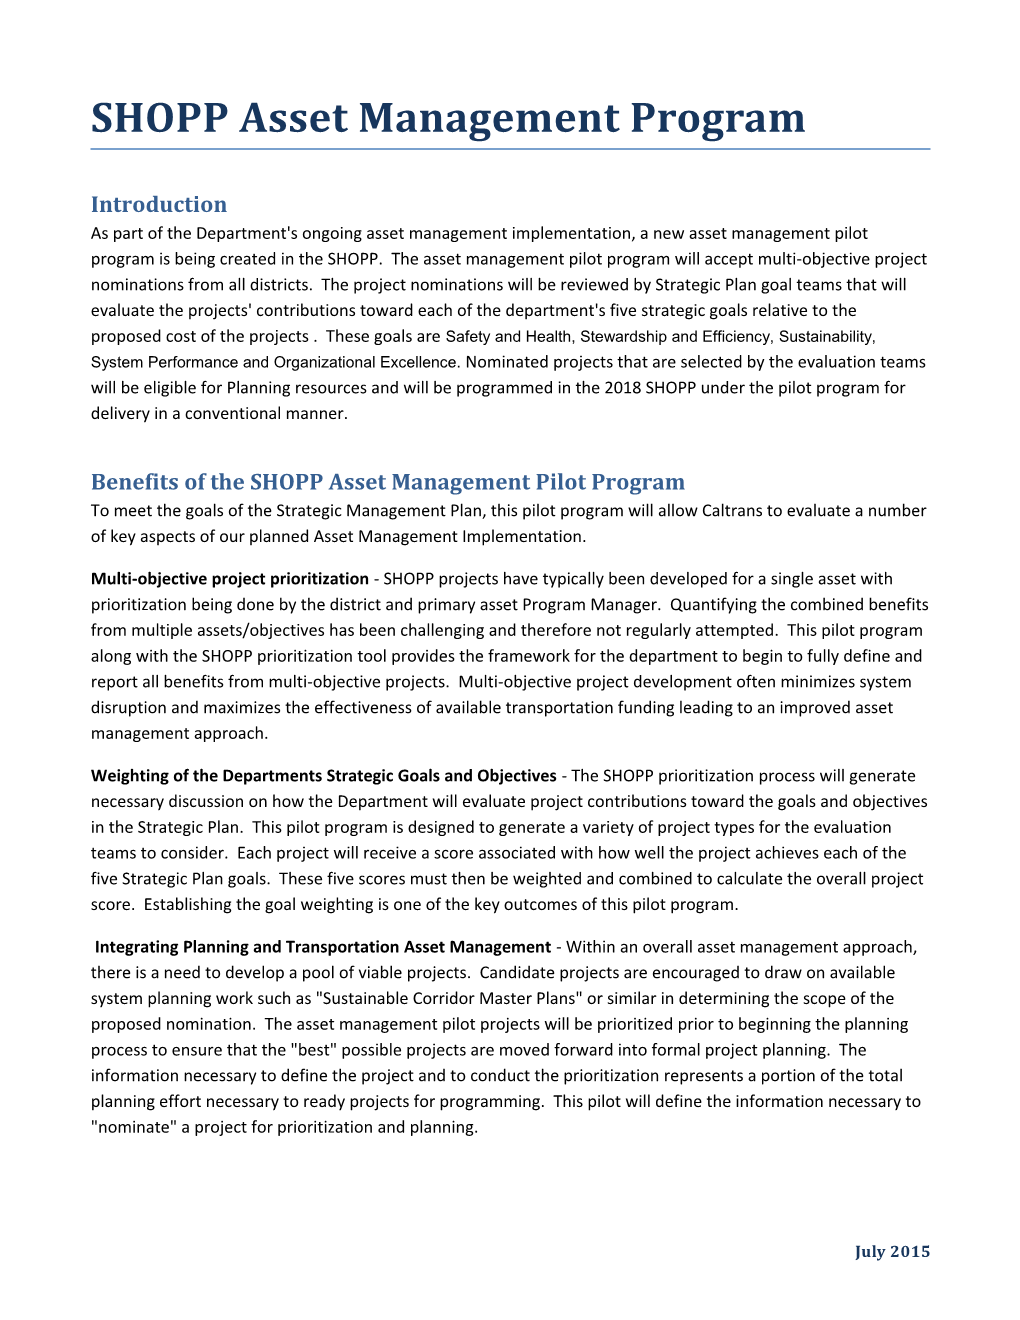 Benefits of the SHOPP Asset Management Pilot Program